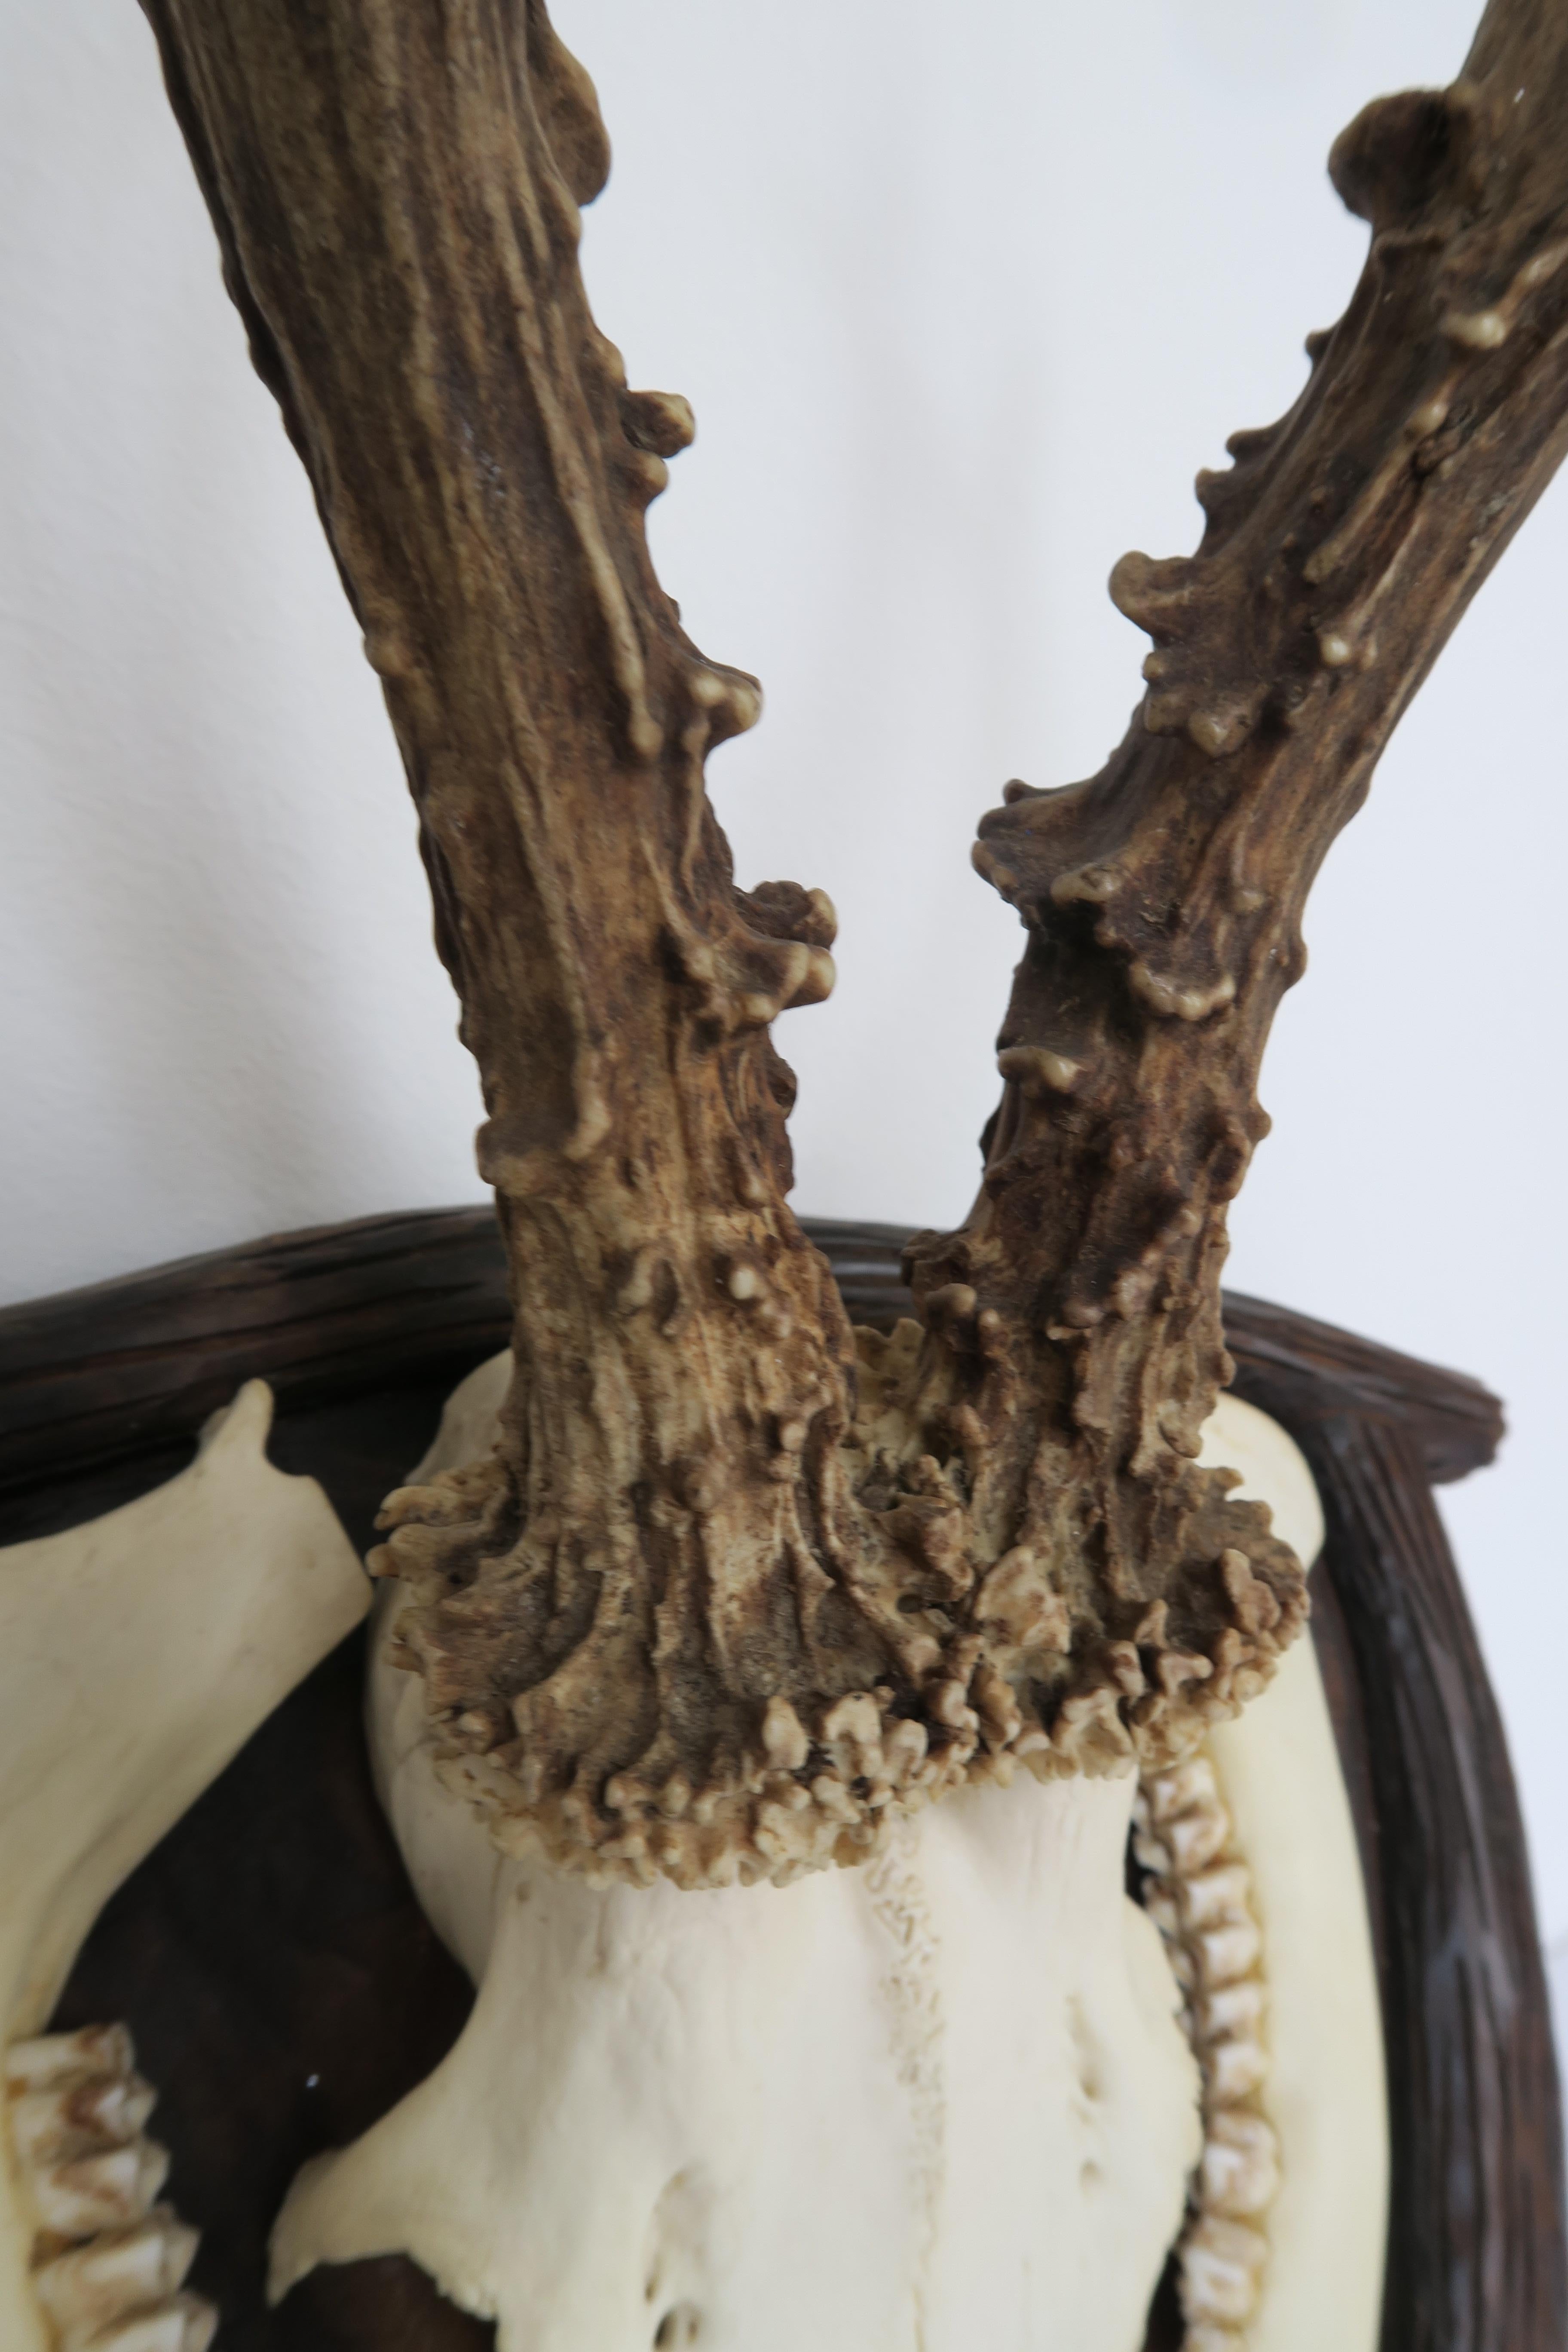 A vendre, un trophée de chasse allemand de la Forêt Noire sculpté à la main. La planche a été fabriquée en bois de noyer autrichien et présente un ensemble de magnifiques taxidermies. Les bois de cerf mesurent environ 23,5 cm de long et sont